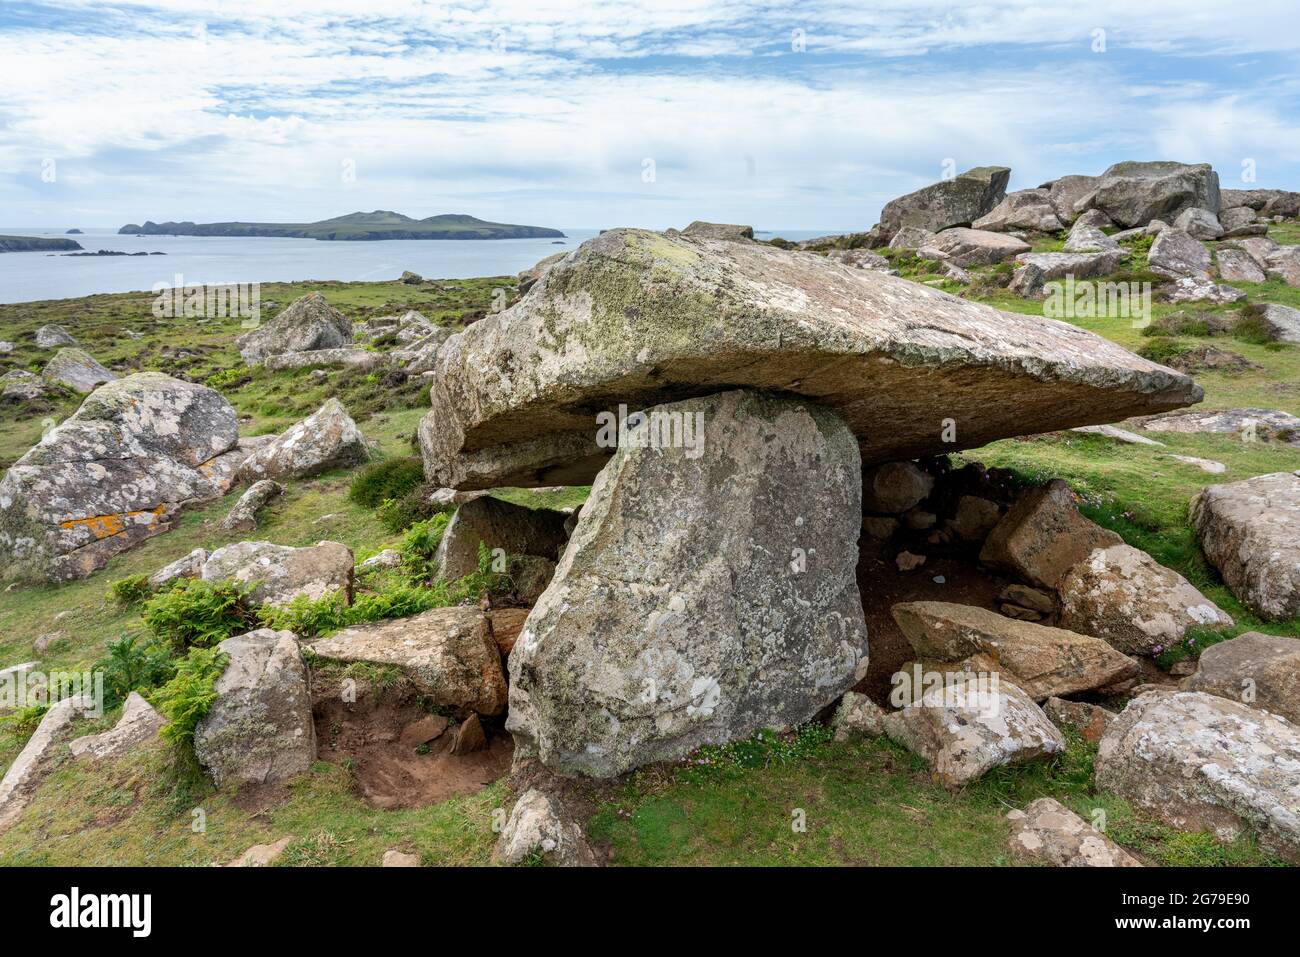 Coetan Arthur ou Arthur's Quoit les vestiges d'une chambre funéraire néolithique sur St David's Head dans Pembrokeshire Royaume-Uni en regardant vers l'île Ramsey Banque D'Images